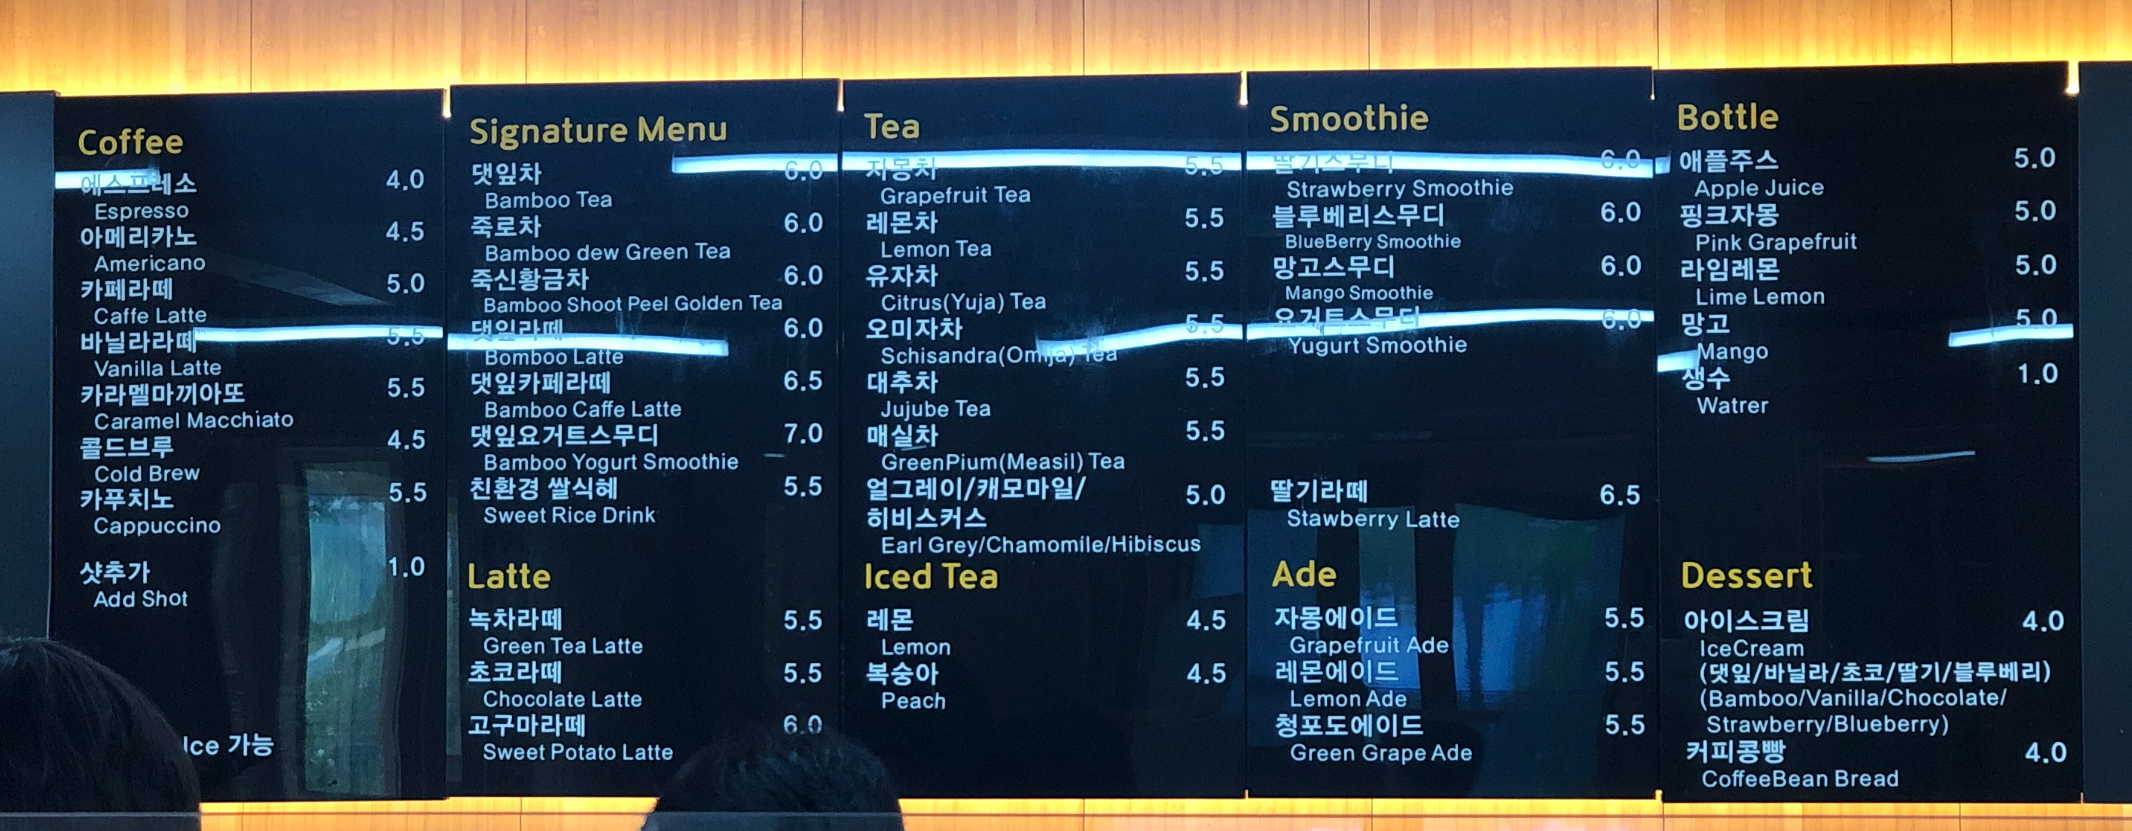 민수랜드-담양죽녹원봉황루전망대카페 메뉴구성표